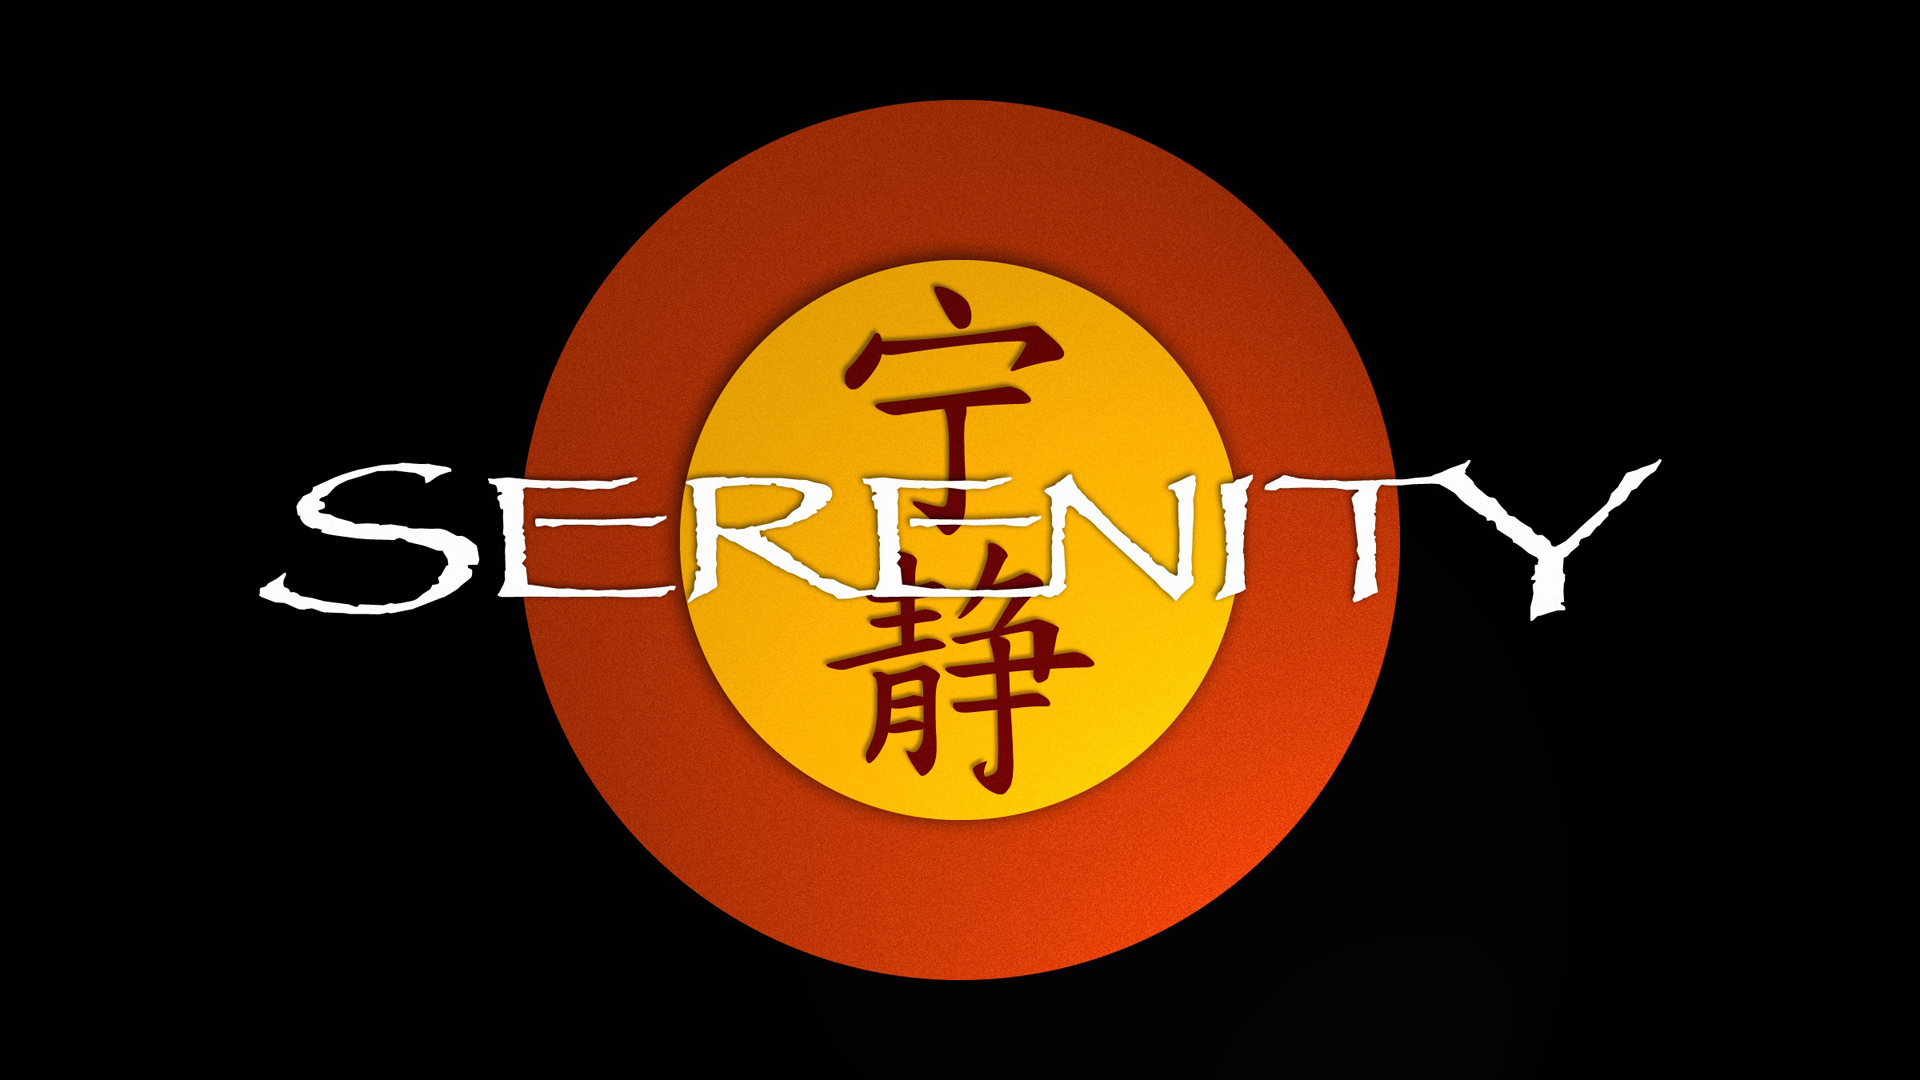 Serenity Firefly Wallpaper Wallpoper